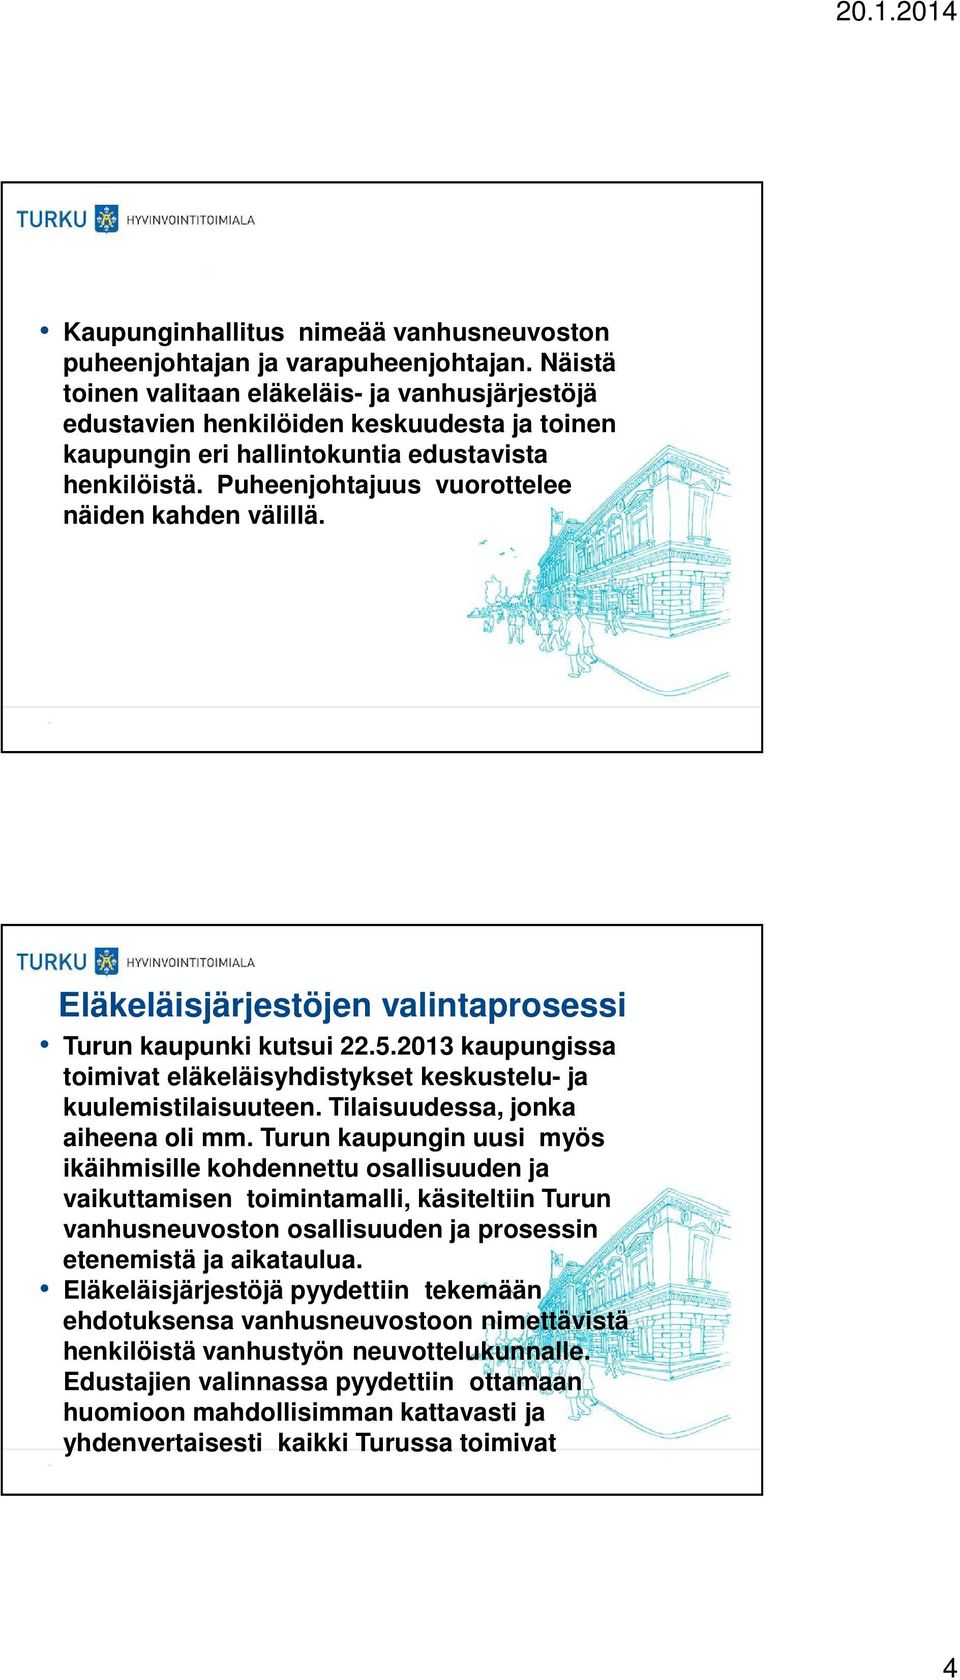 Puheenjohtajuus vuorottelee näiden kahden välillä. Eläkeläisjärjestöjen valintaprosessi Turun kaupunki kutsui 22.5.2013 kaupungissa toimivat eläkeläisyhdistykset keskustelu- ja kuulemistilaisuuteen.